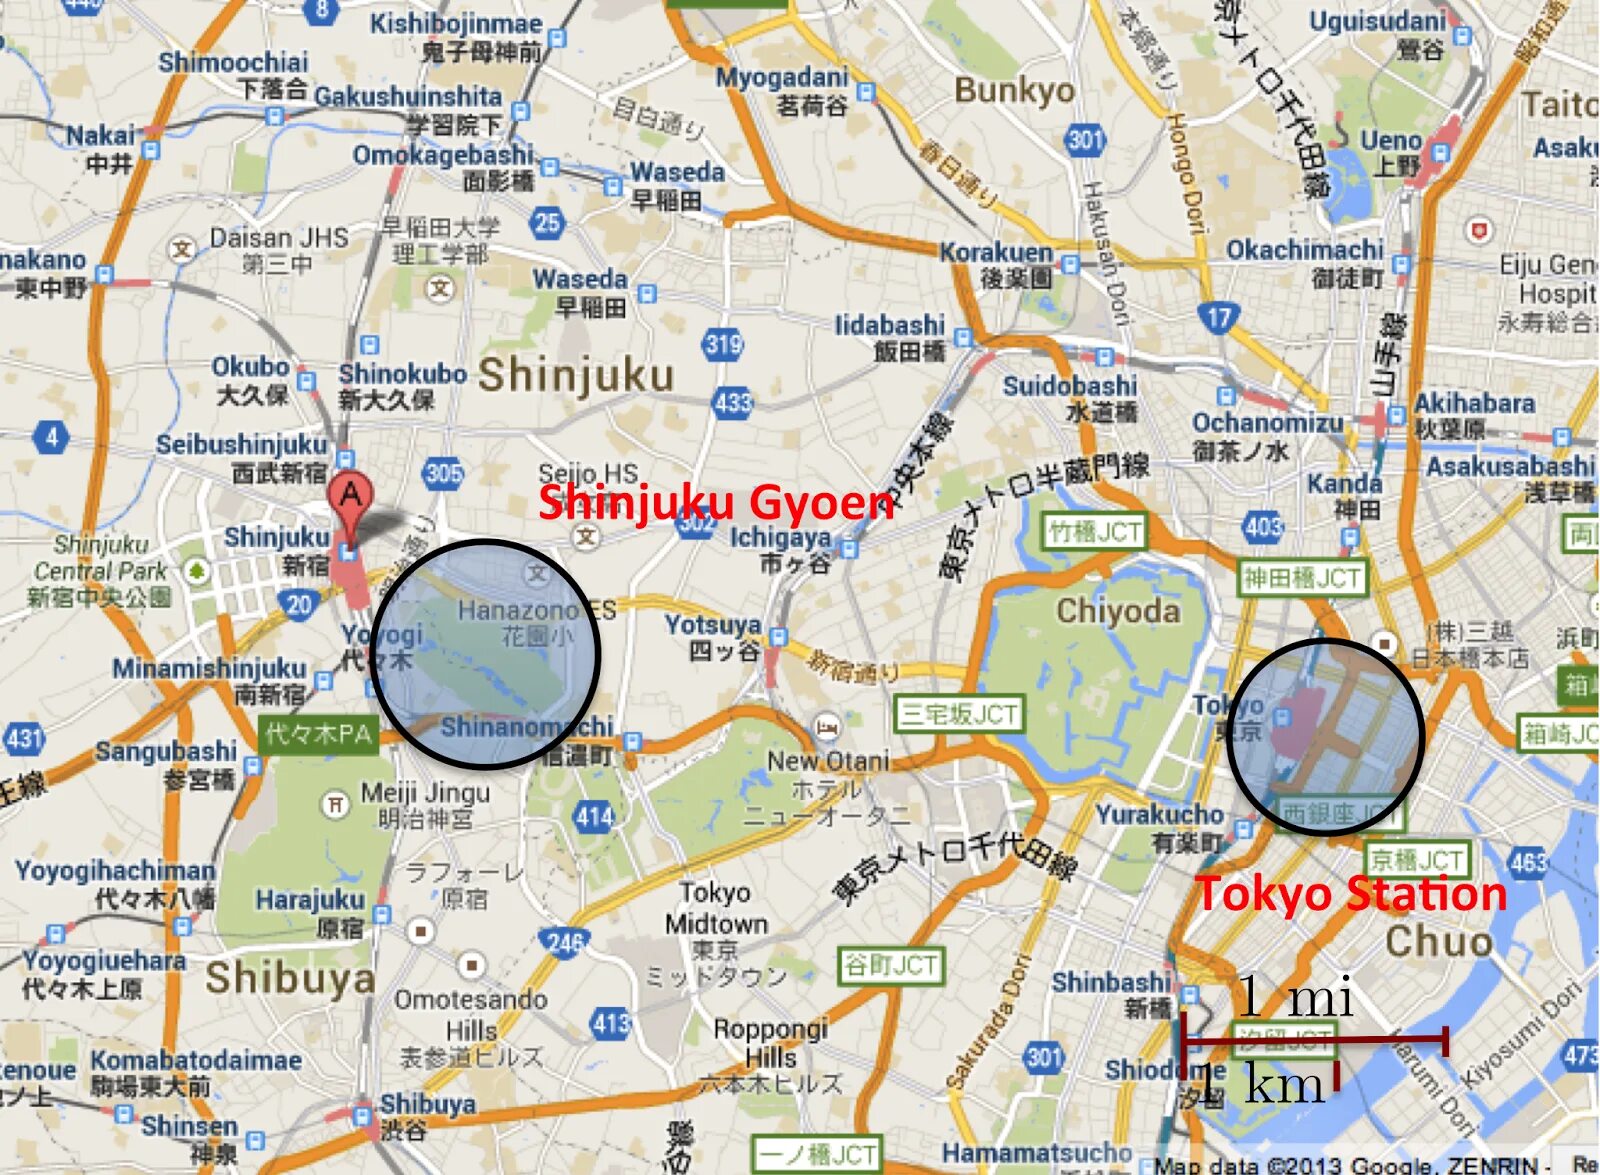 Роппонги на карте Токио. Район Минато Токио карта. Роппонги Токио карта карта. Карта Токио улицы. Как получить карту токио